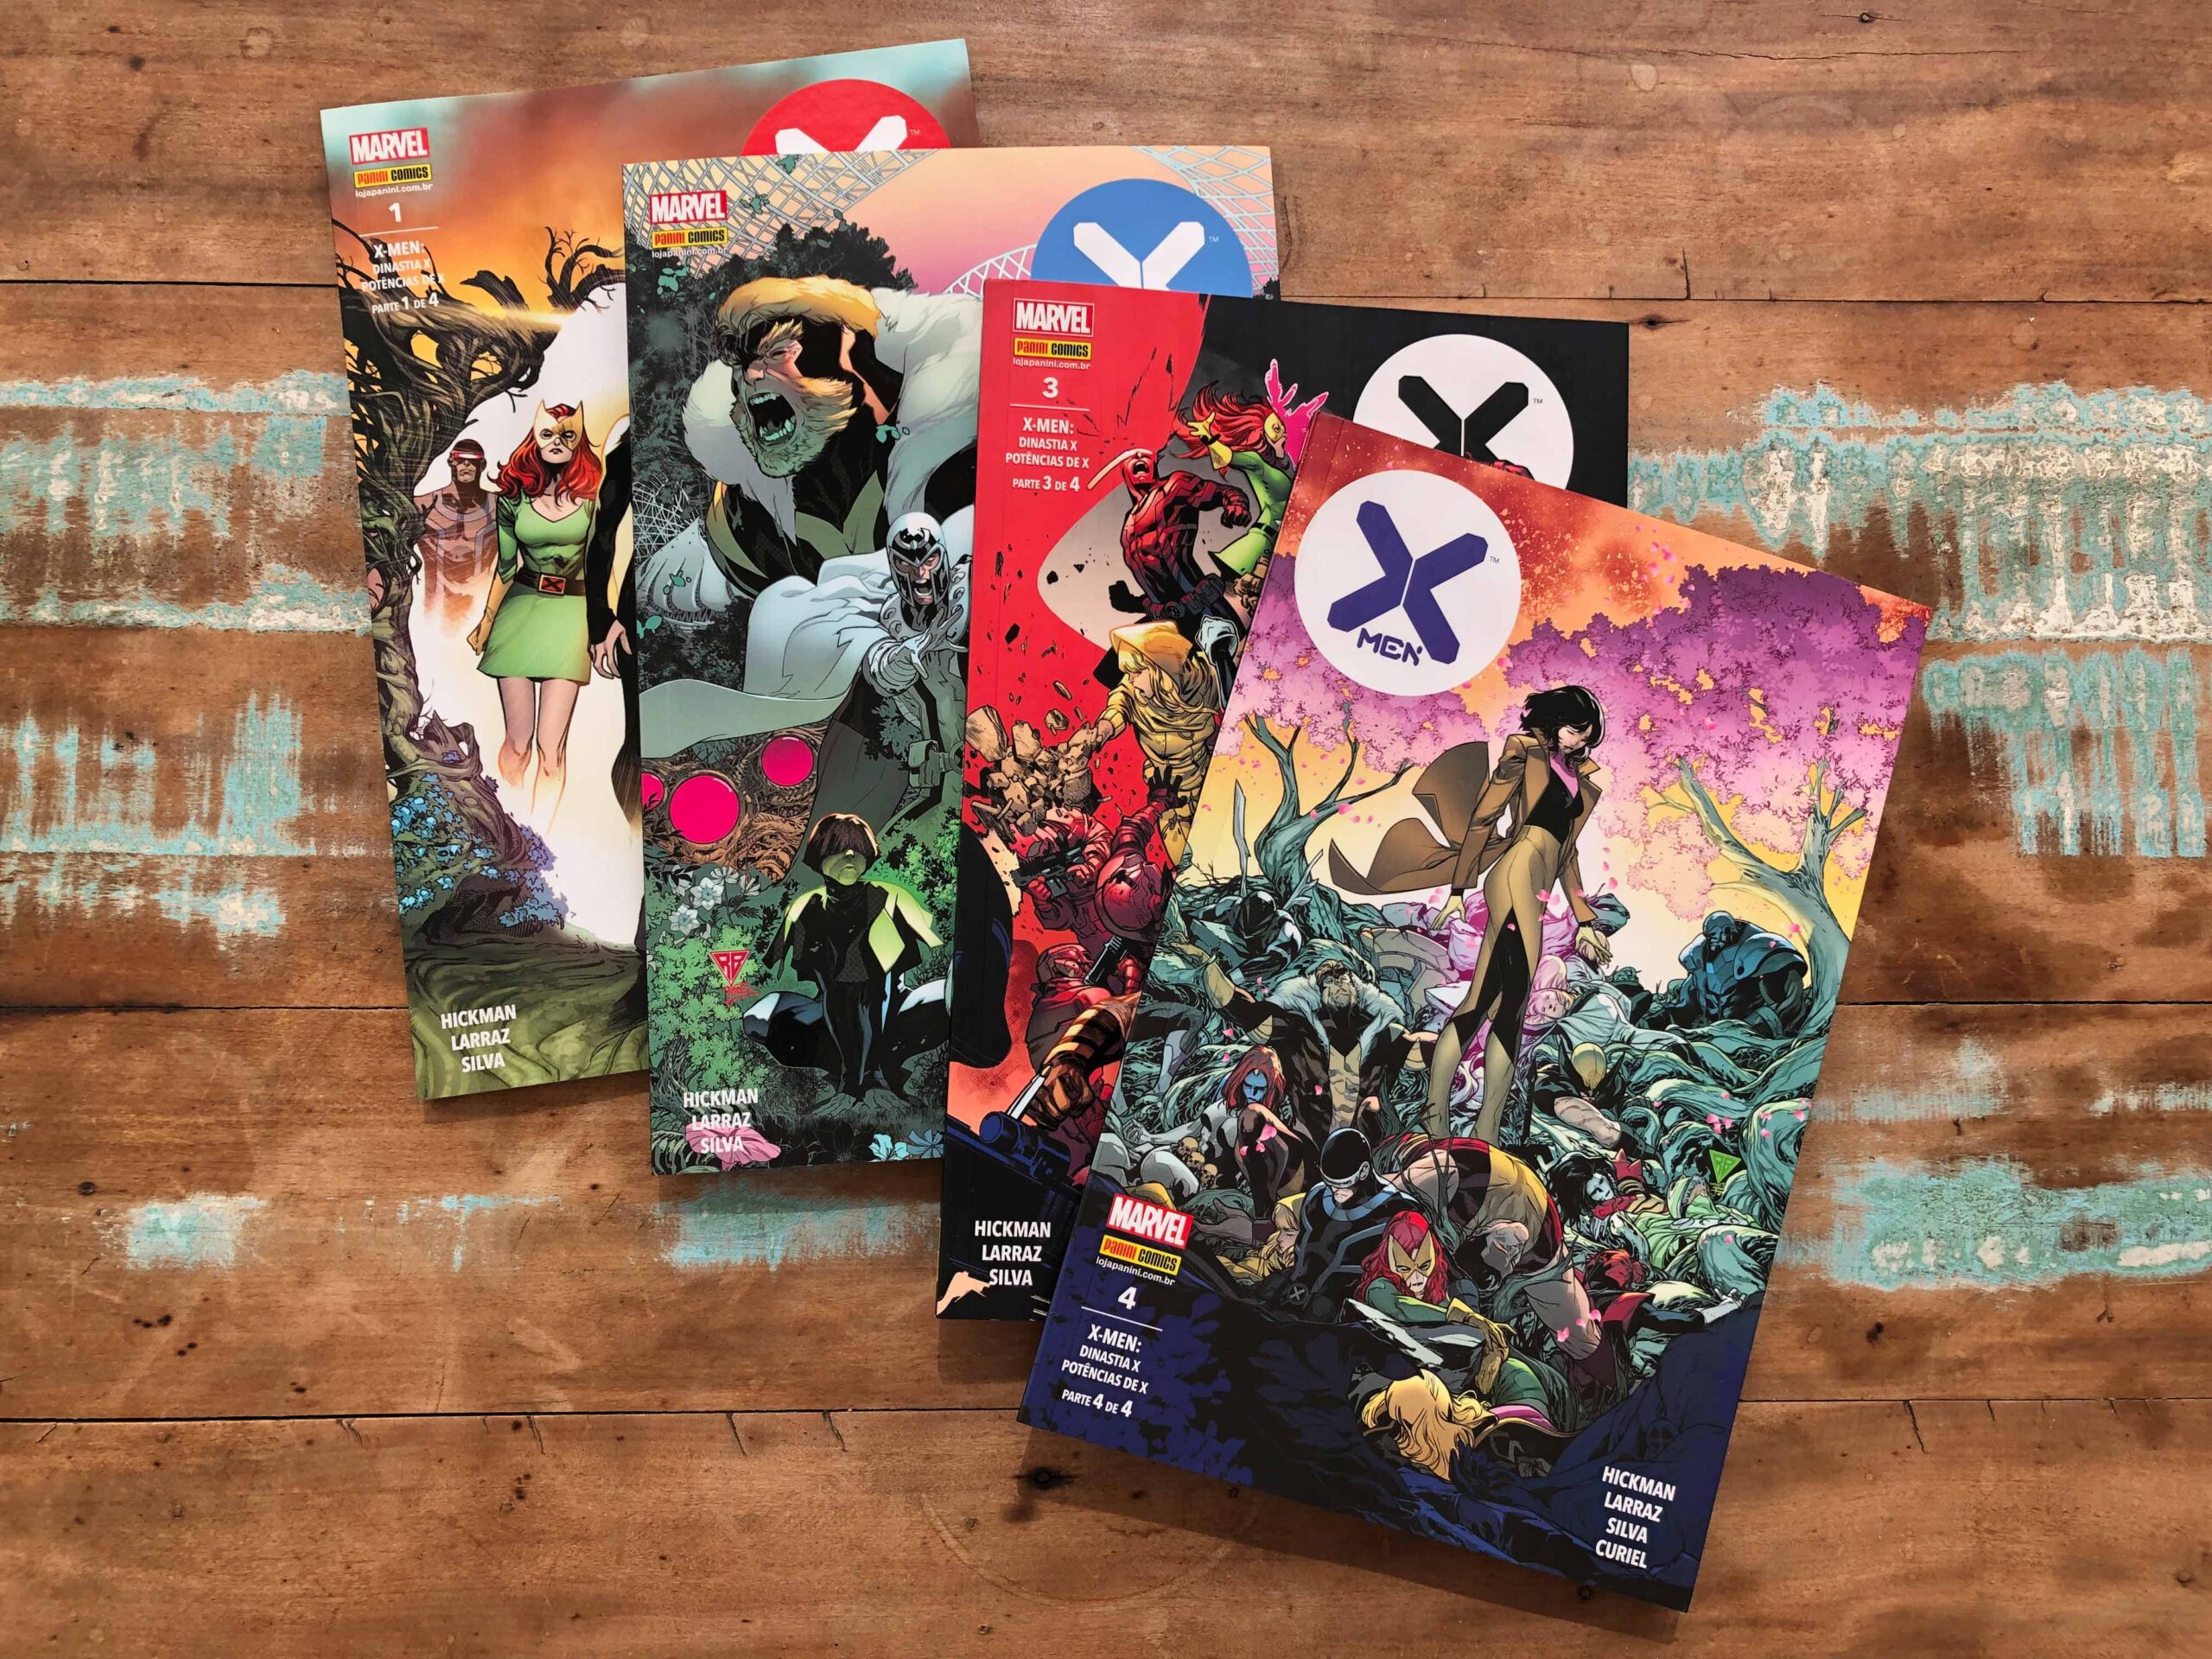 Velho Também lê quadrinhos - Crítica X-Men House of X/Powers of X